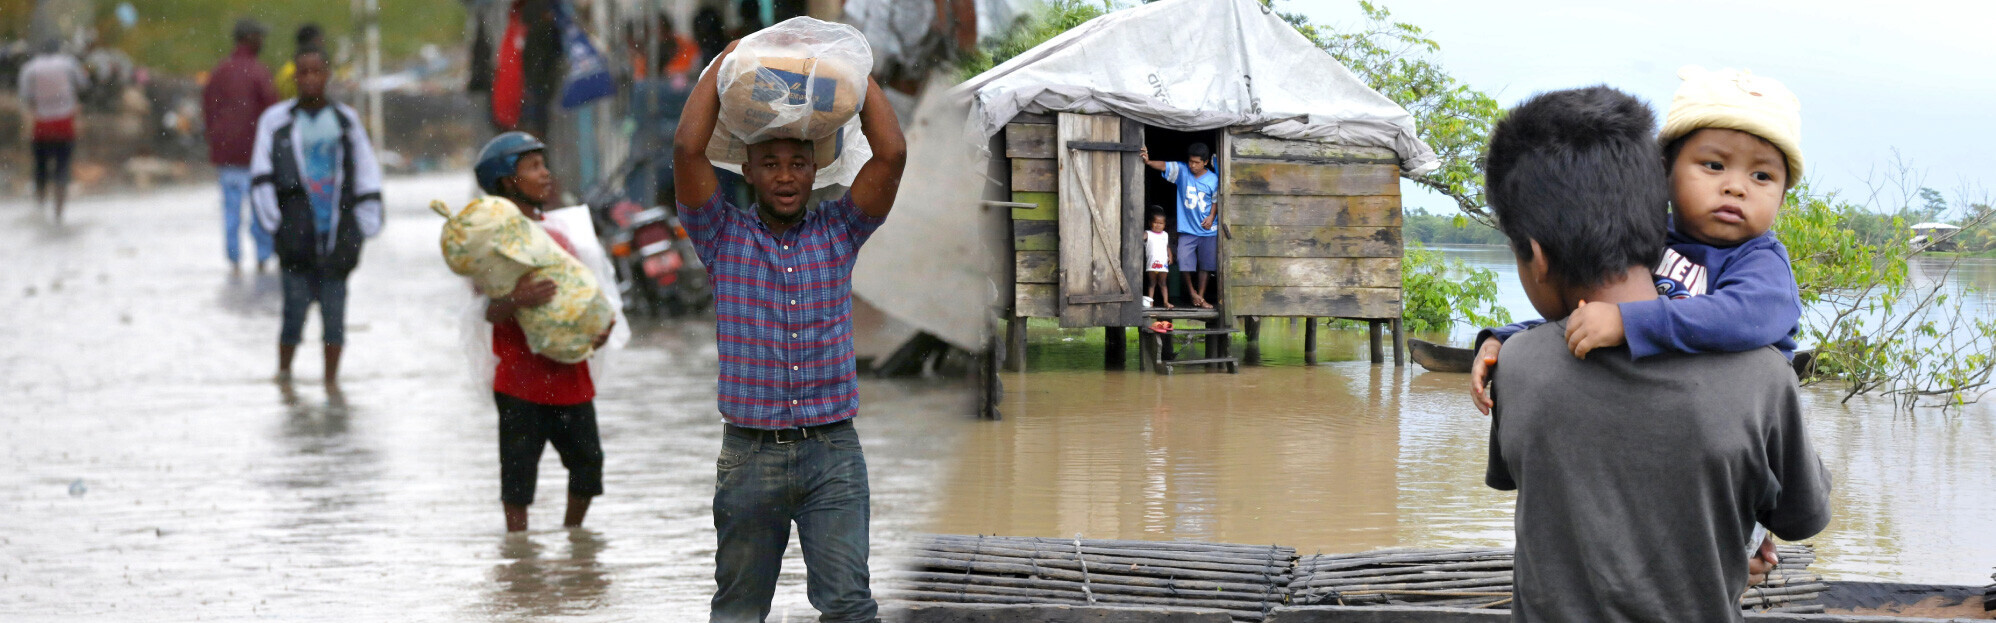 Betroffene des Hurrikans Matthew schleppen Sandsäcke durch das Wasser in Haiti.